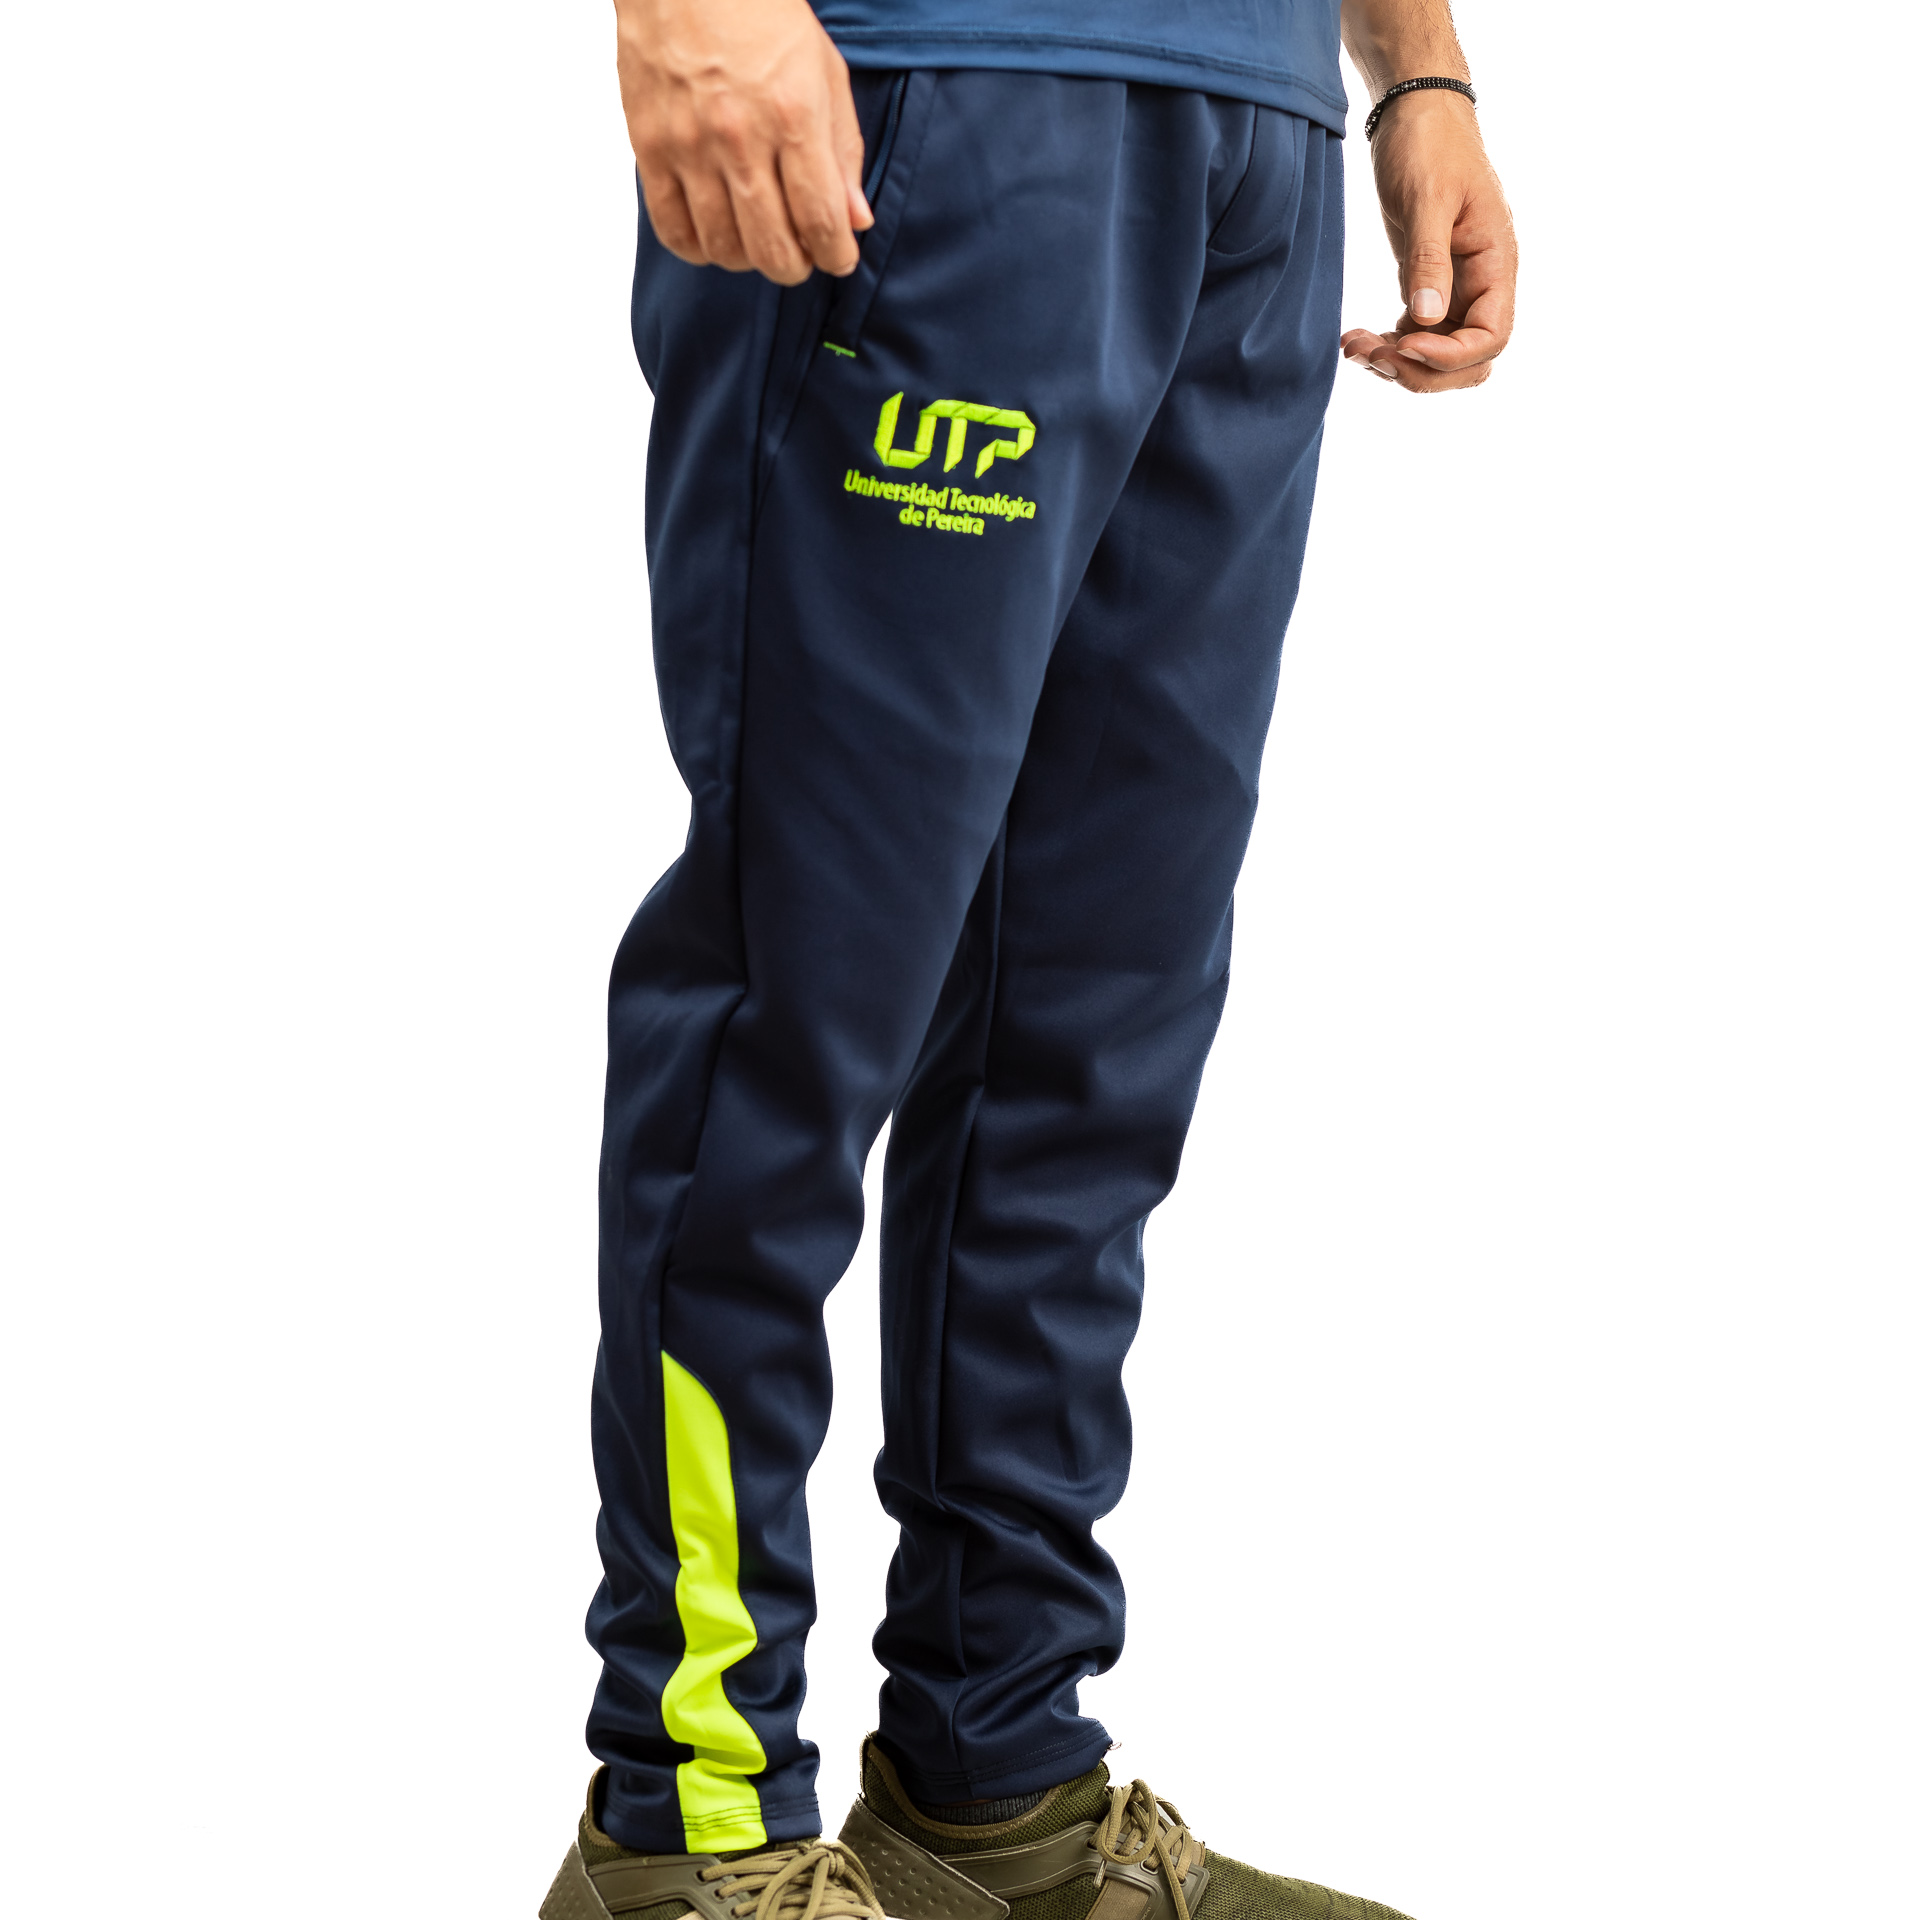 Pantalón deportivo hombre – Tienda UTP